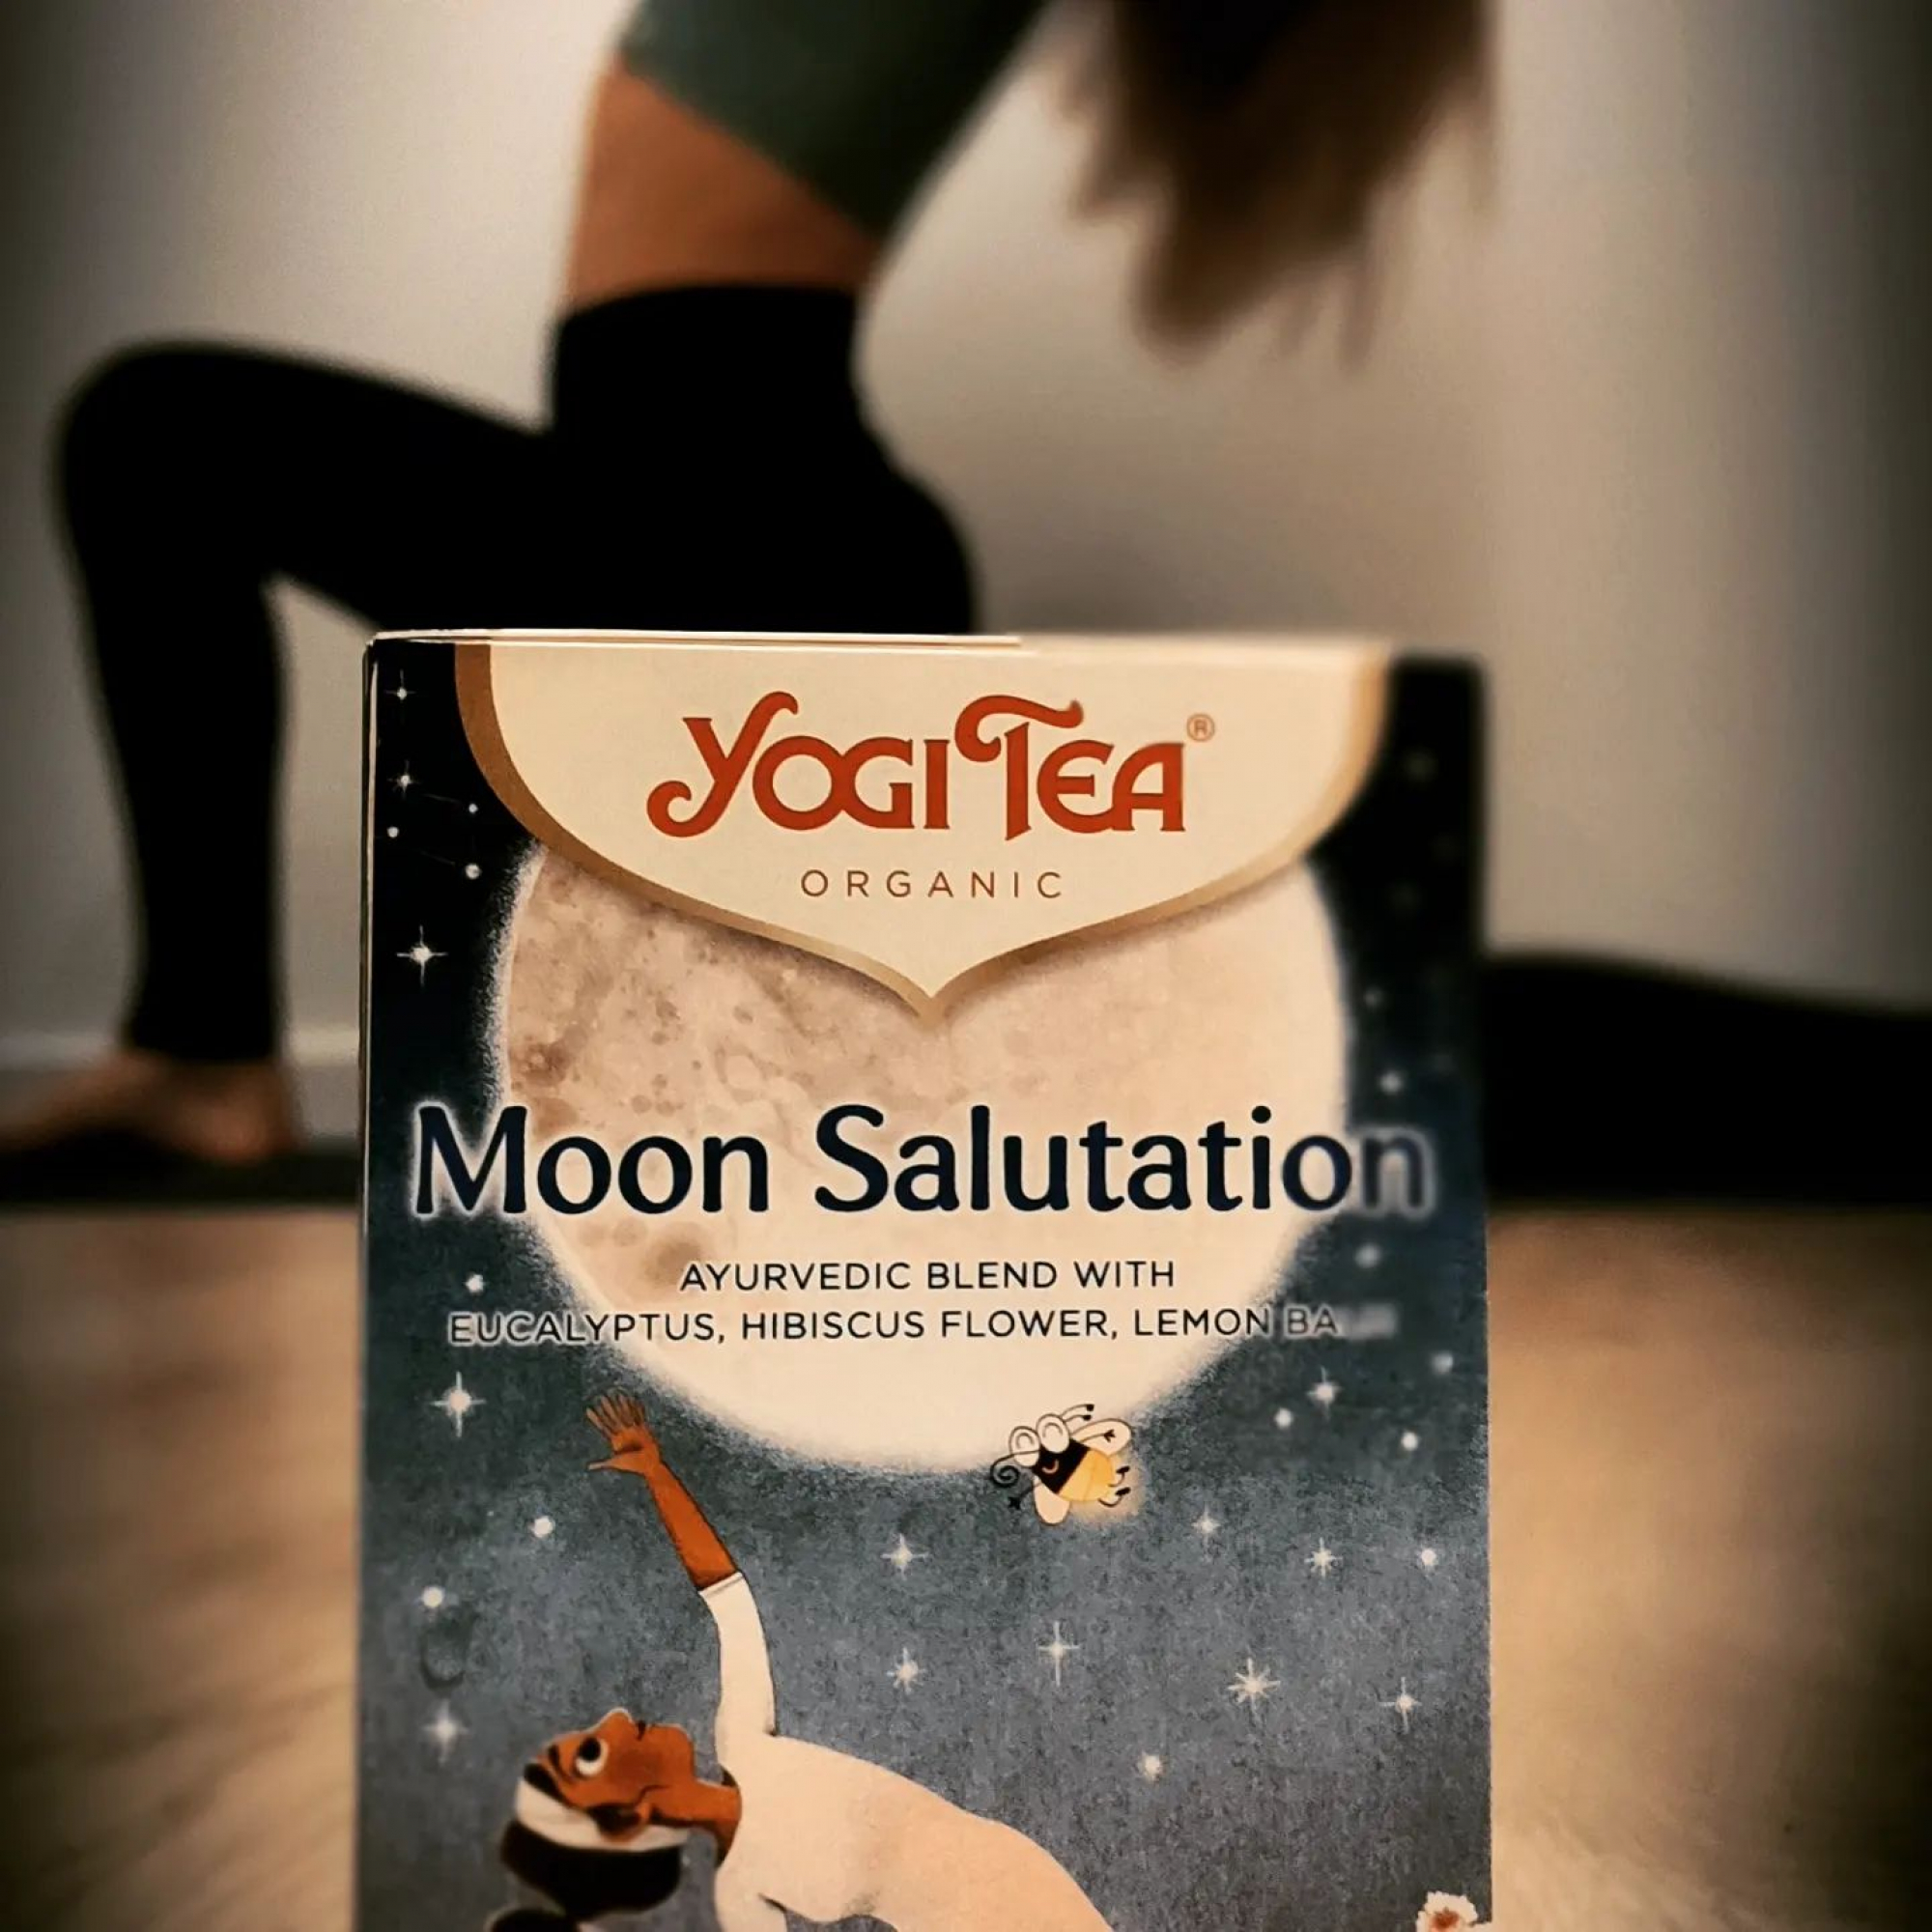 Practicando el Saludo a la Luna 🌜 tomamos su energía, calmamos cuerpo y mente y reconectamos con nuestra parte femenina. Es la inspiración de este nuevo Yogi Tea de edición limitada, con melisa y eucalipto. Oooommm 🧘‍♀️

#sitgesverd
#sitges
#sitgesvida
#yogitea